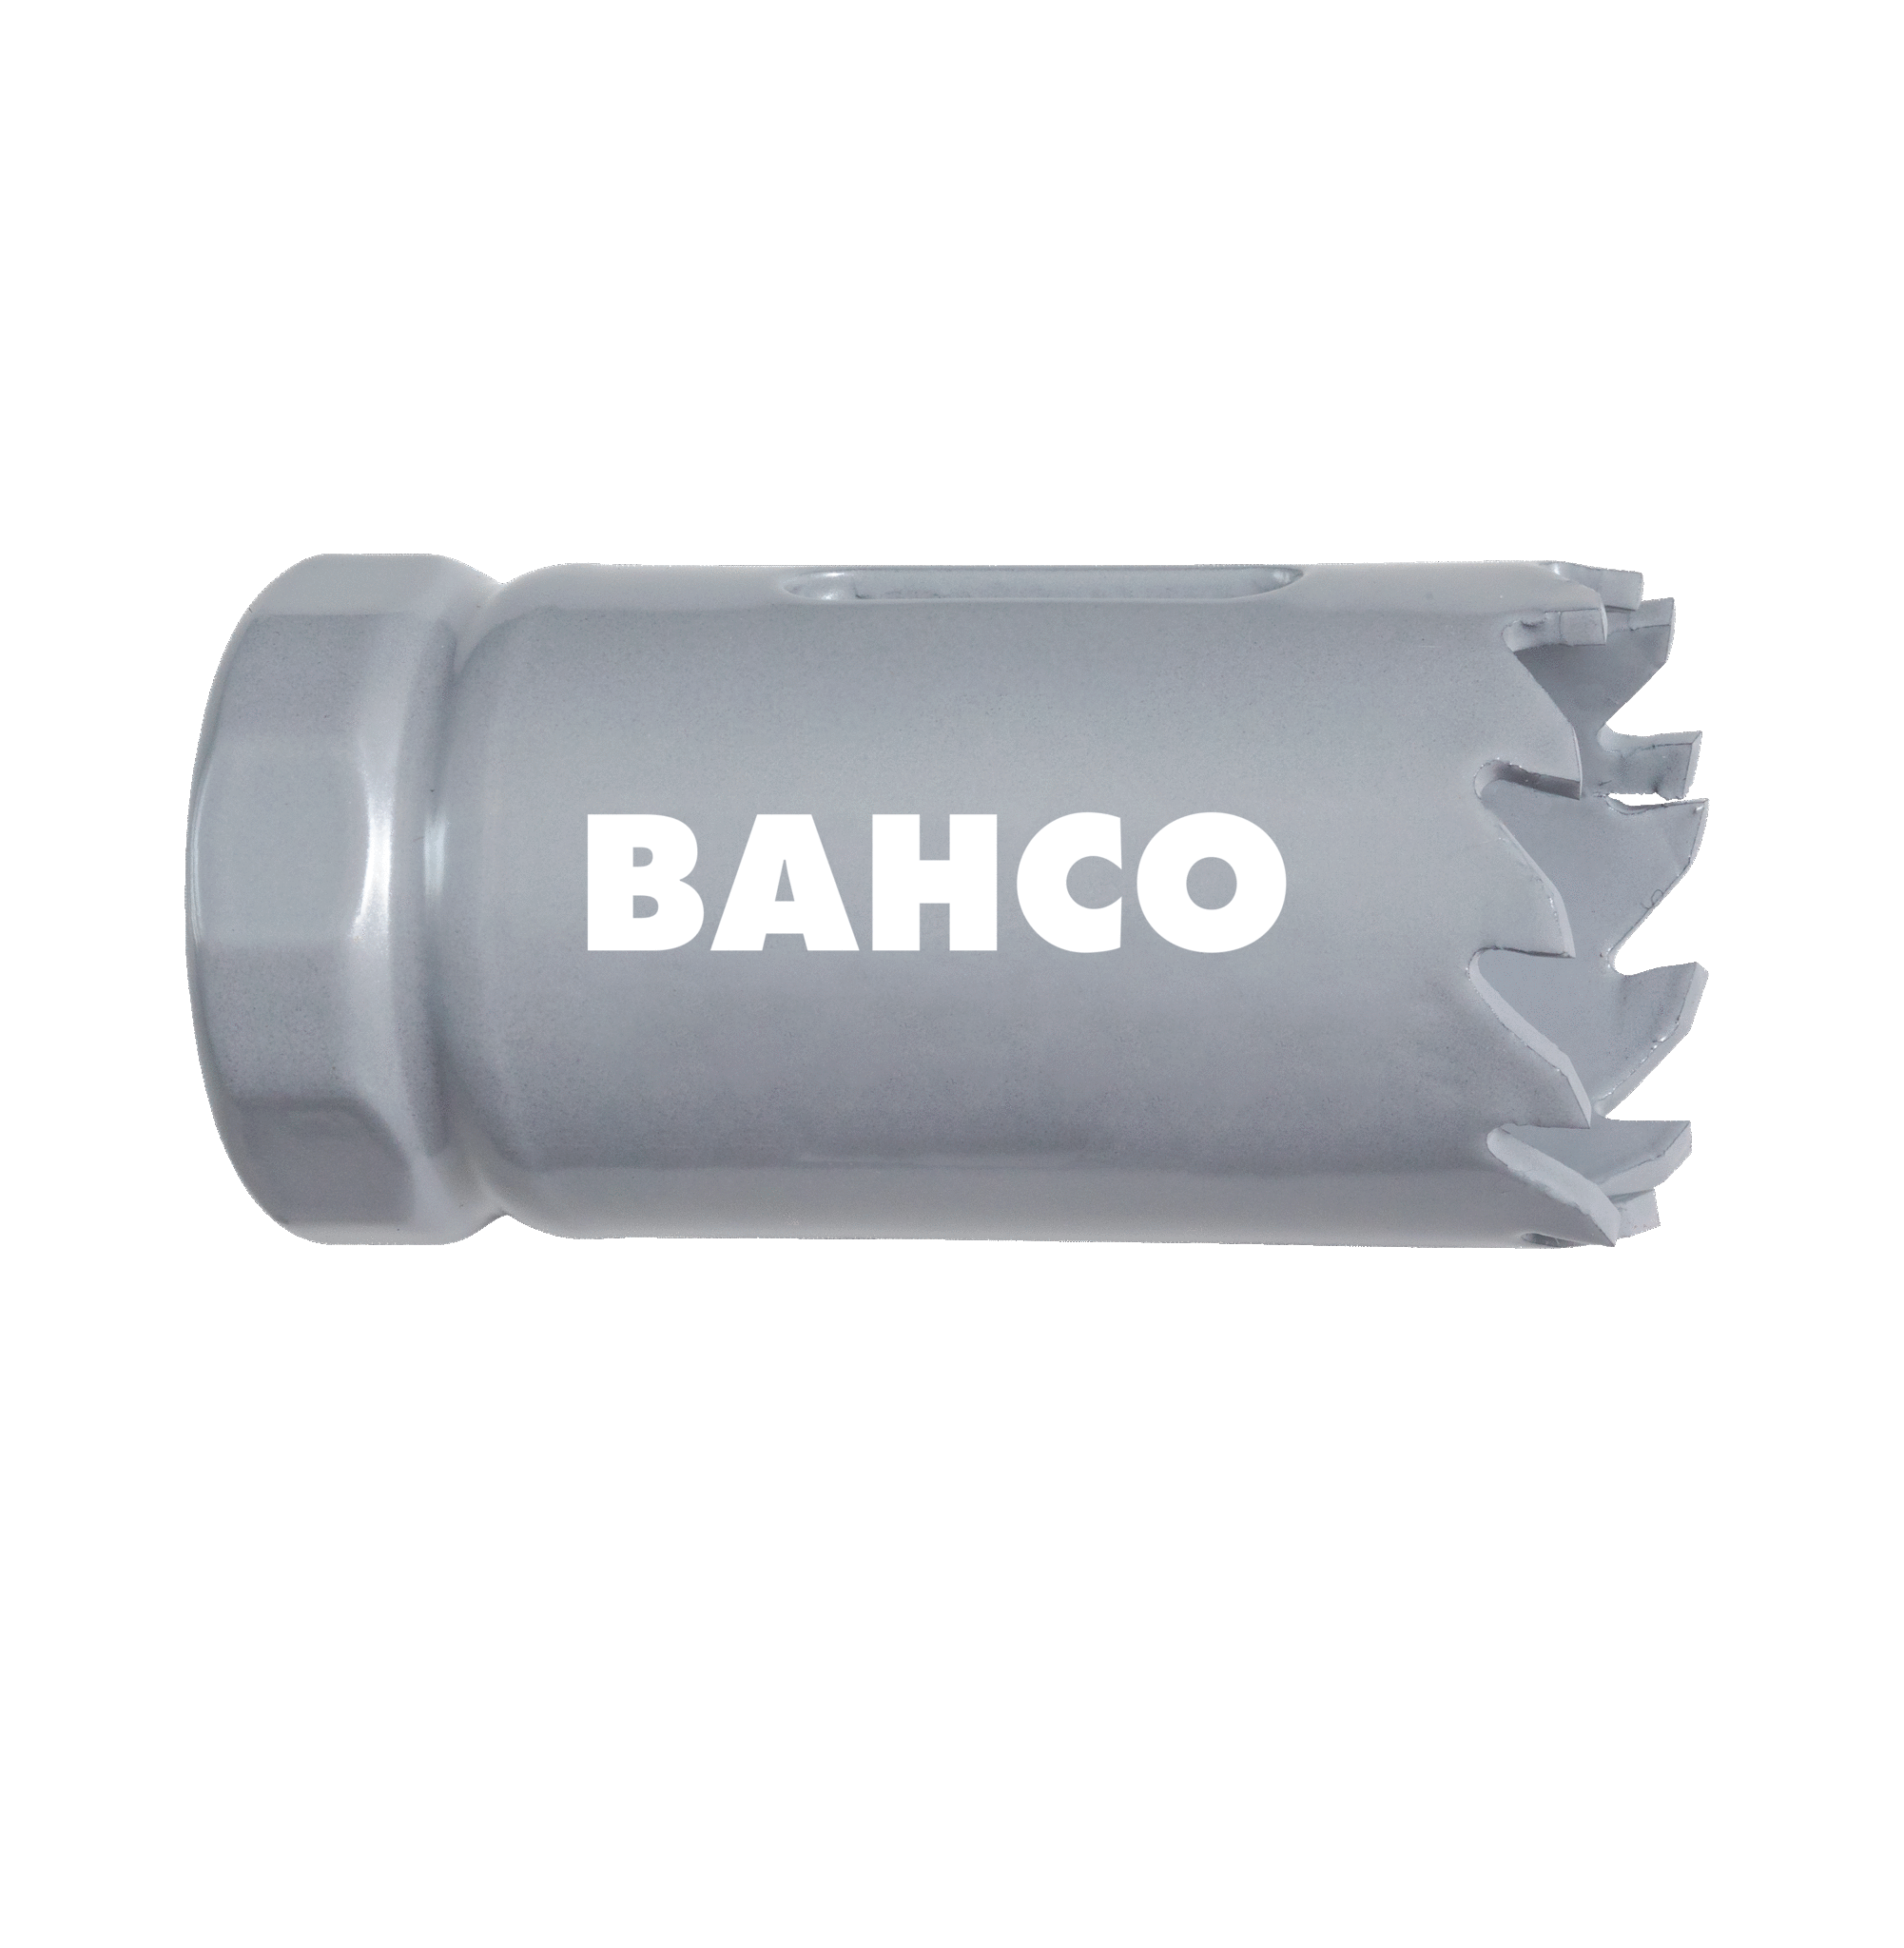 Кольцевые пилы с твердосплавными напайками BAHCO 3832-41